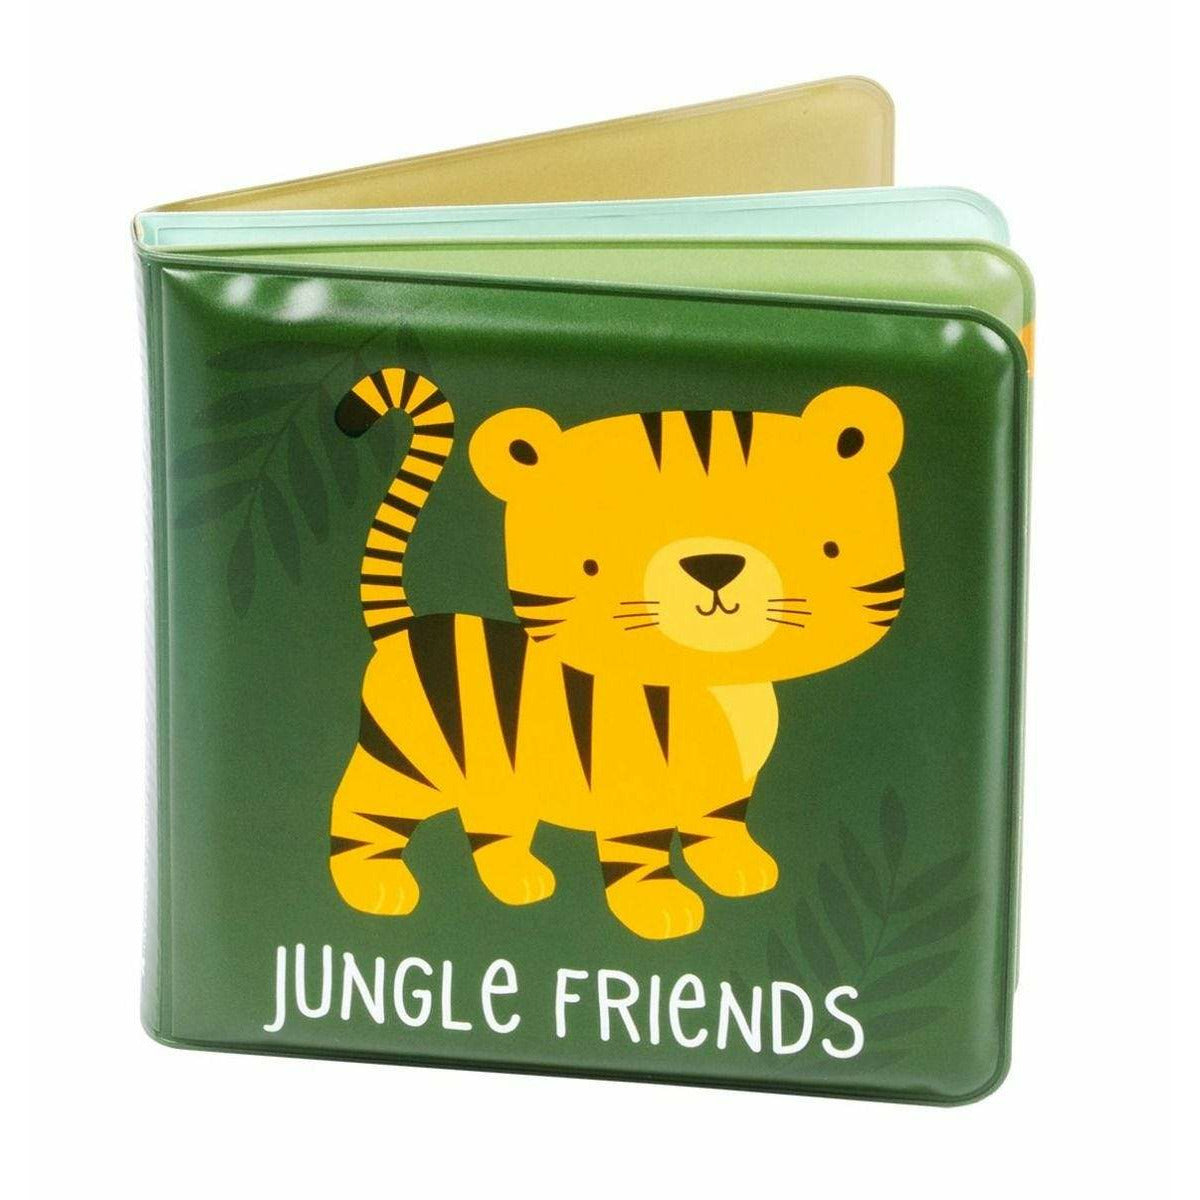 Bath book: Jungle friends